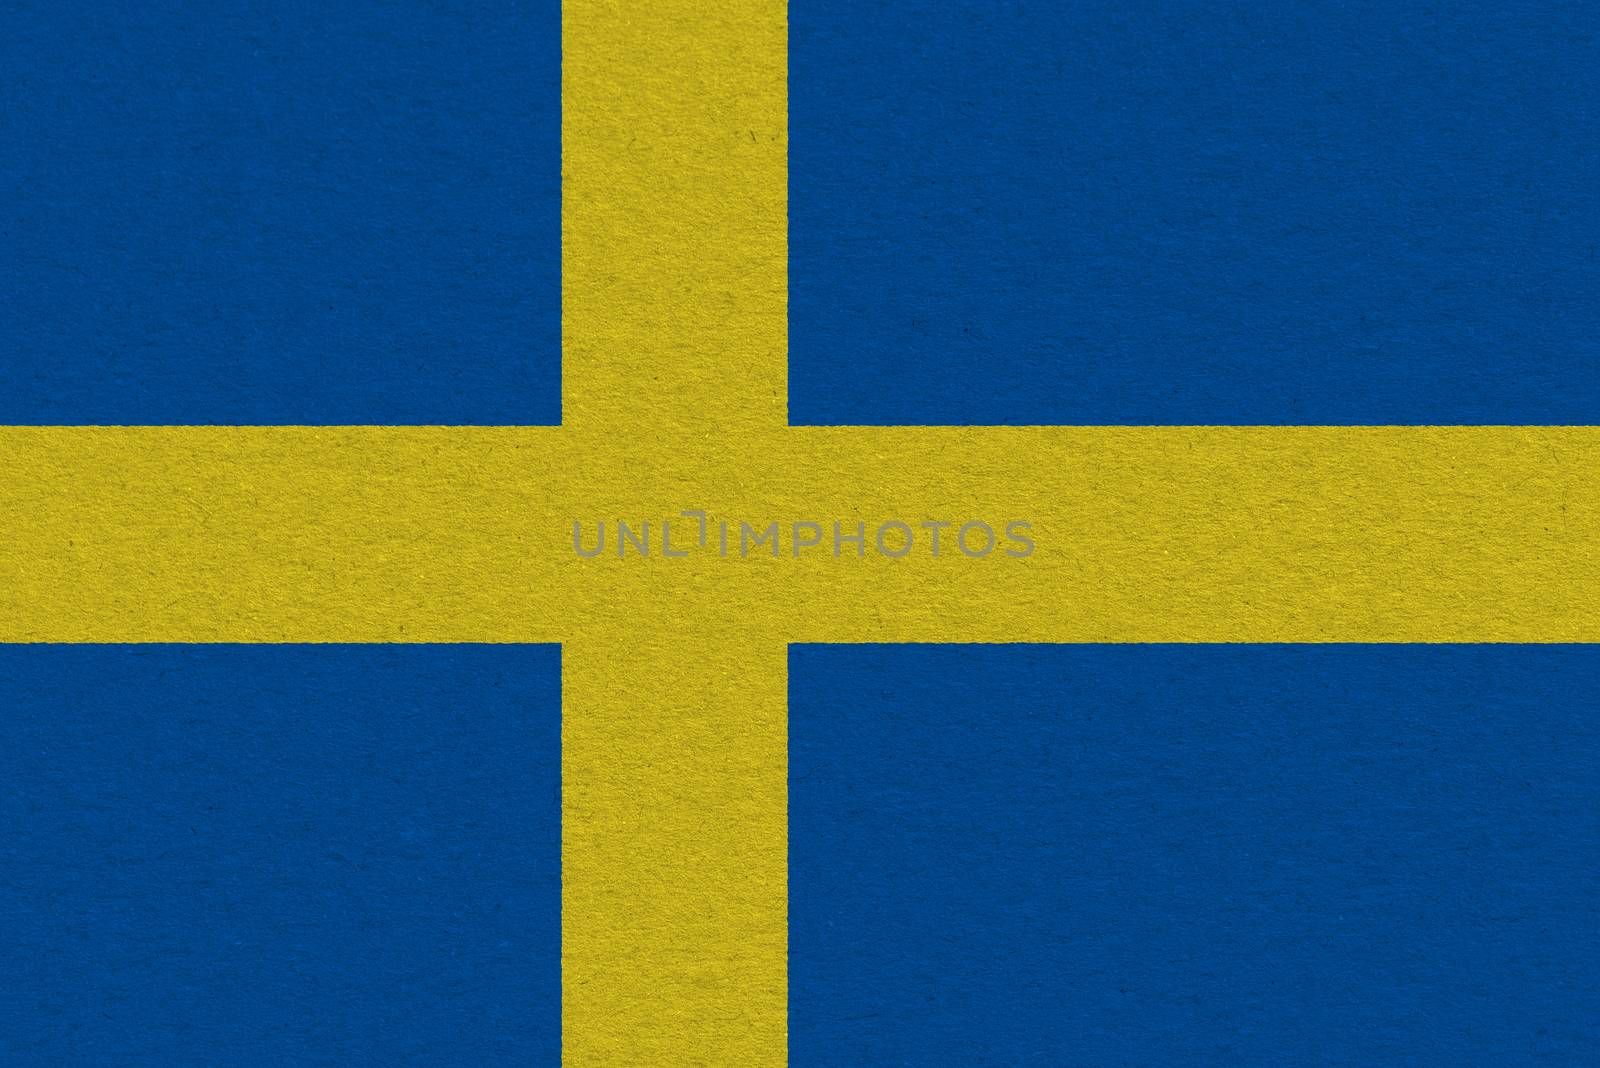 Sweden flag painted on paper. Patriotic background. National flag of Sweden